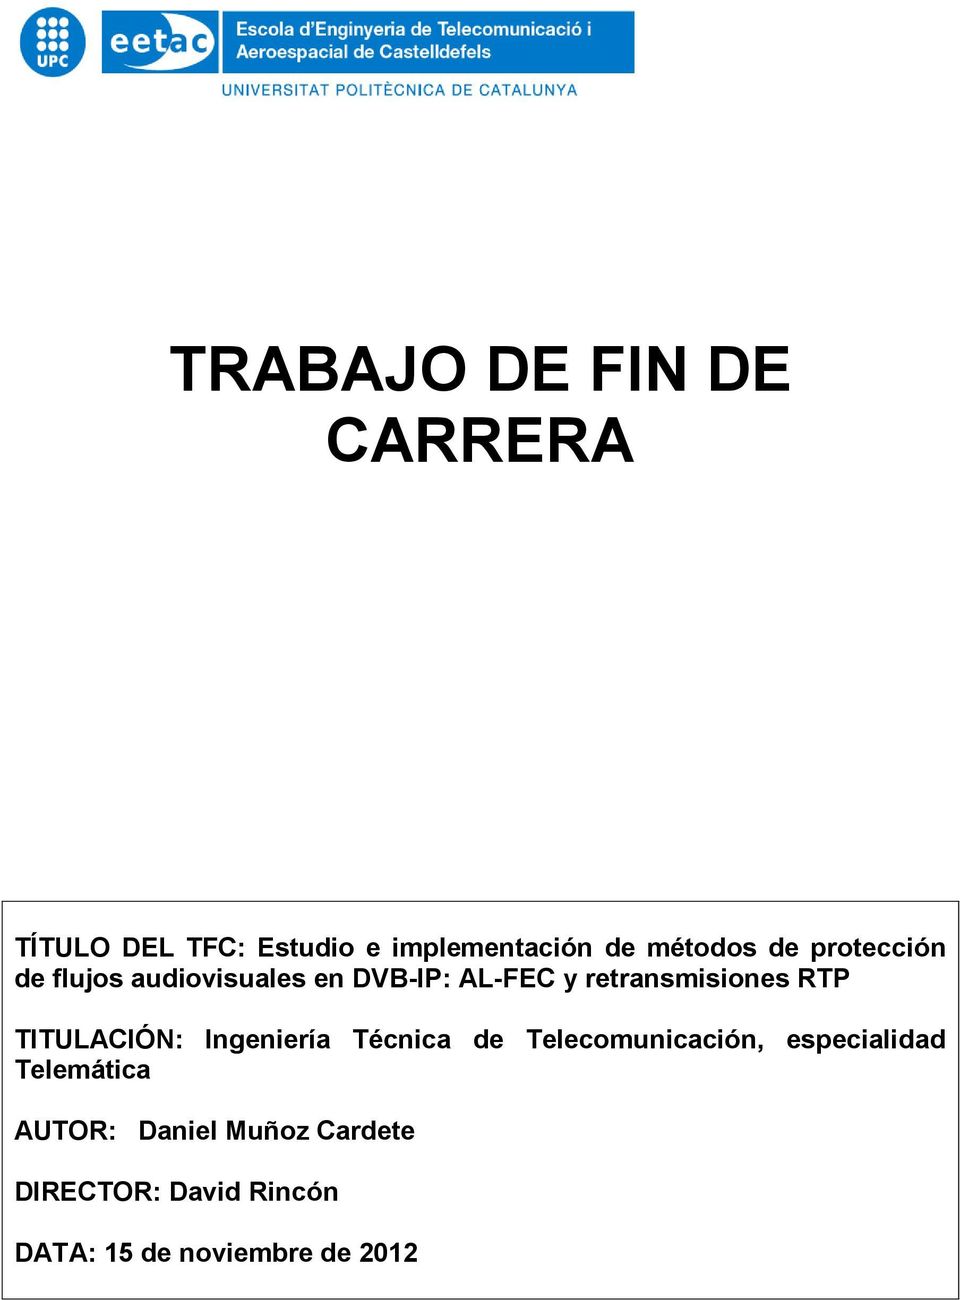 TITULACIÓN: Ingeniería Técnica de Telecomunicación, especialidad Telemática